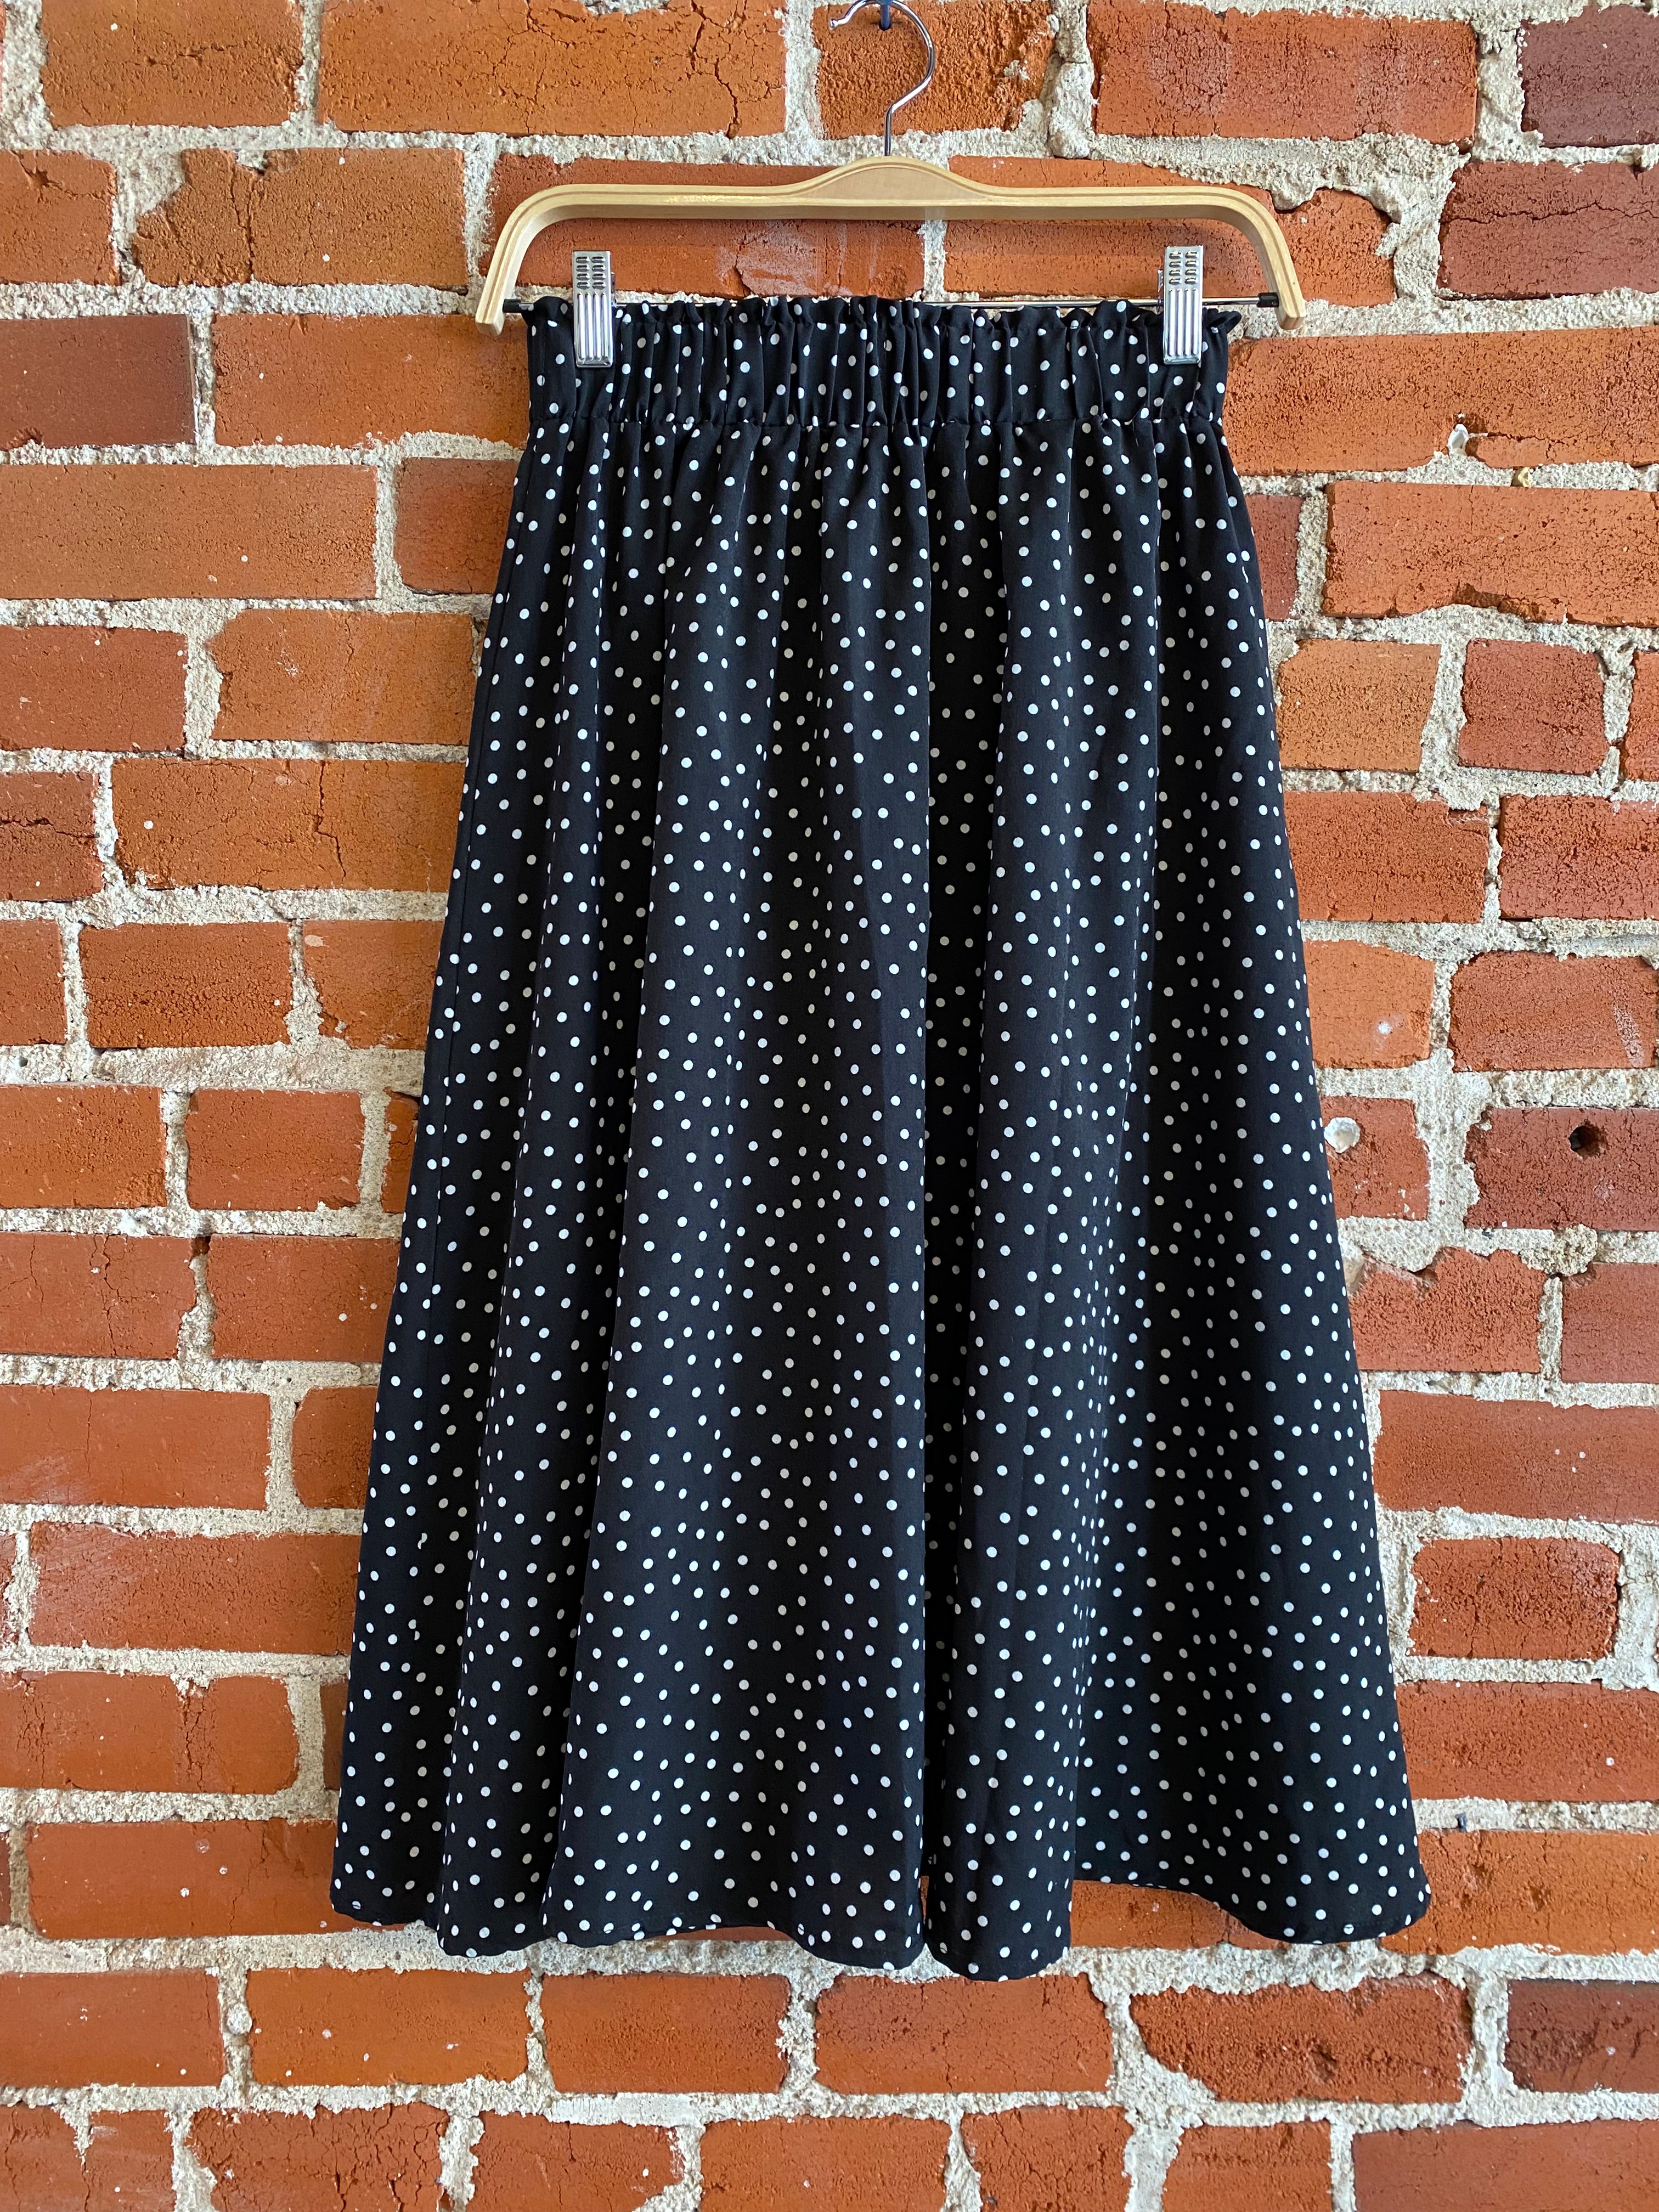 
  
  Black and white polka dot midi skirt
  
